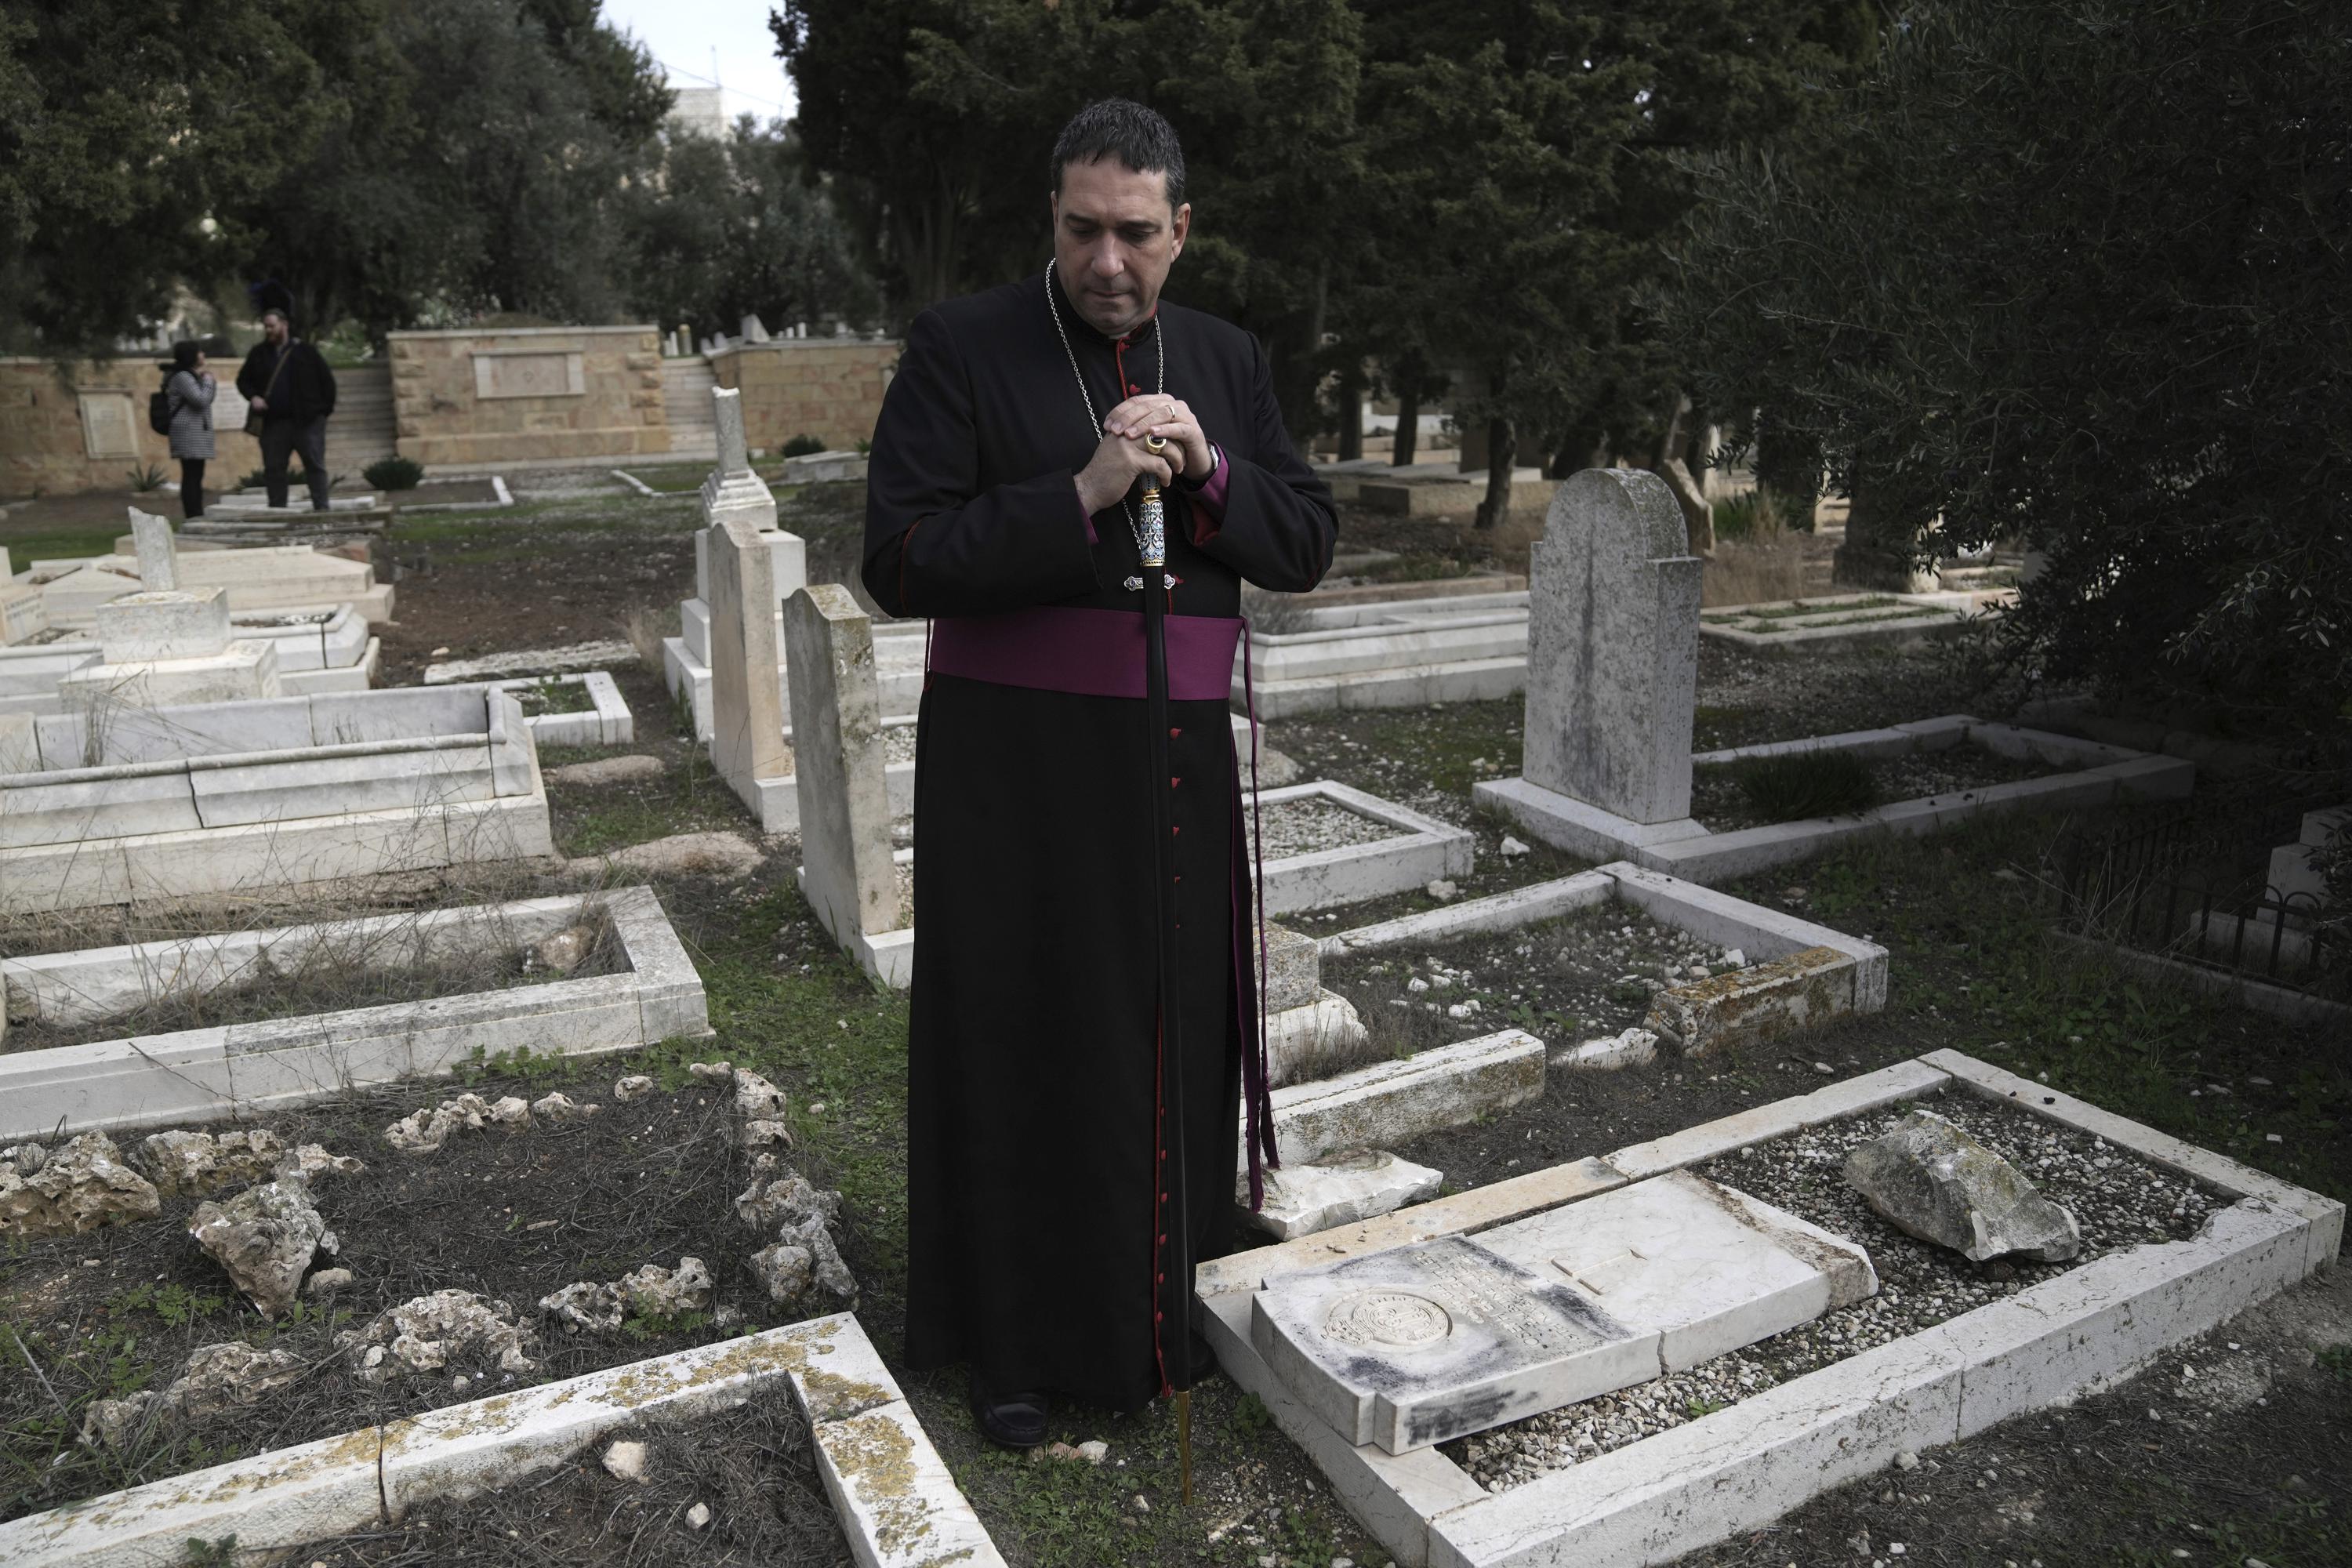 Attack on Jerusalem graves unnerves Christians